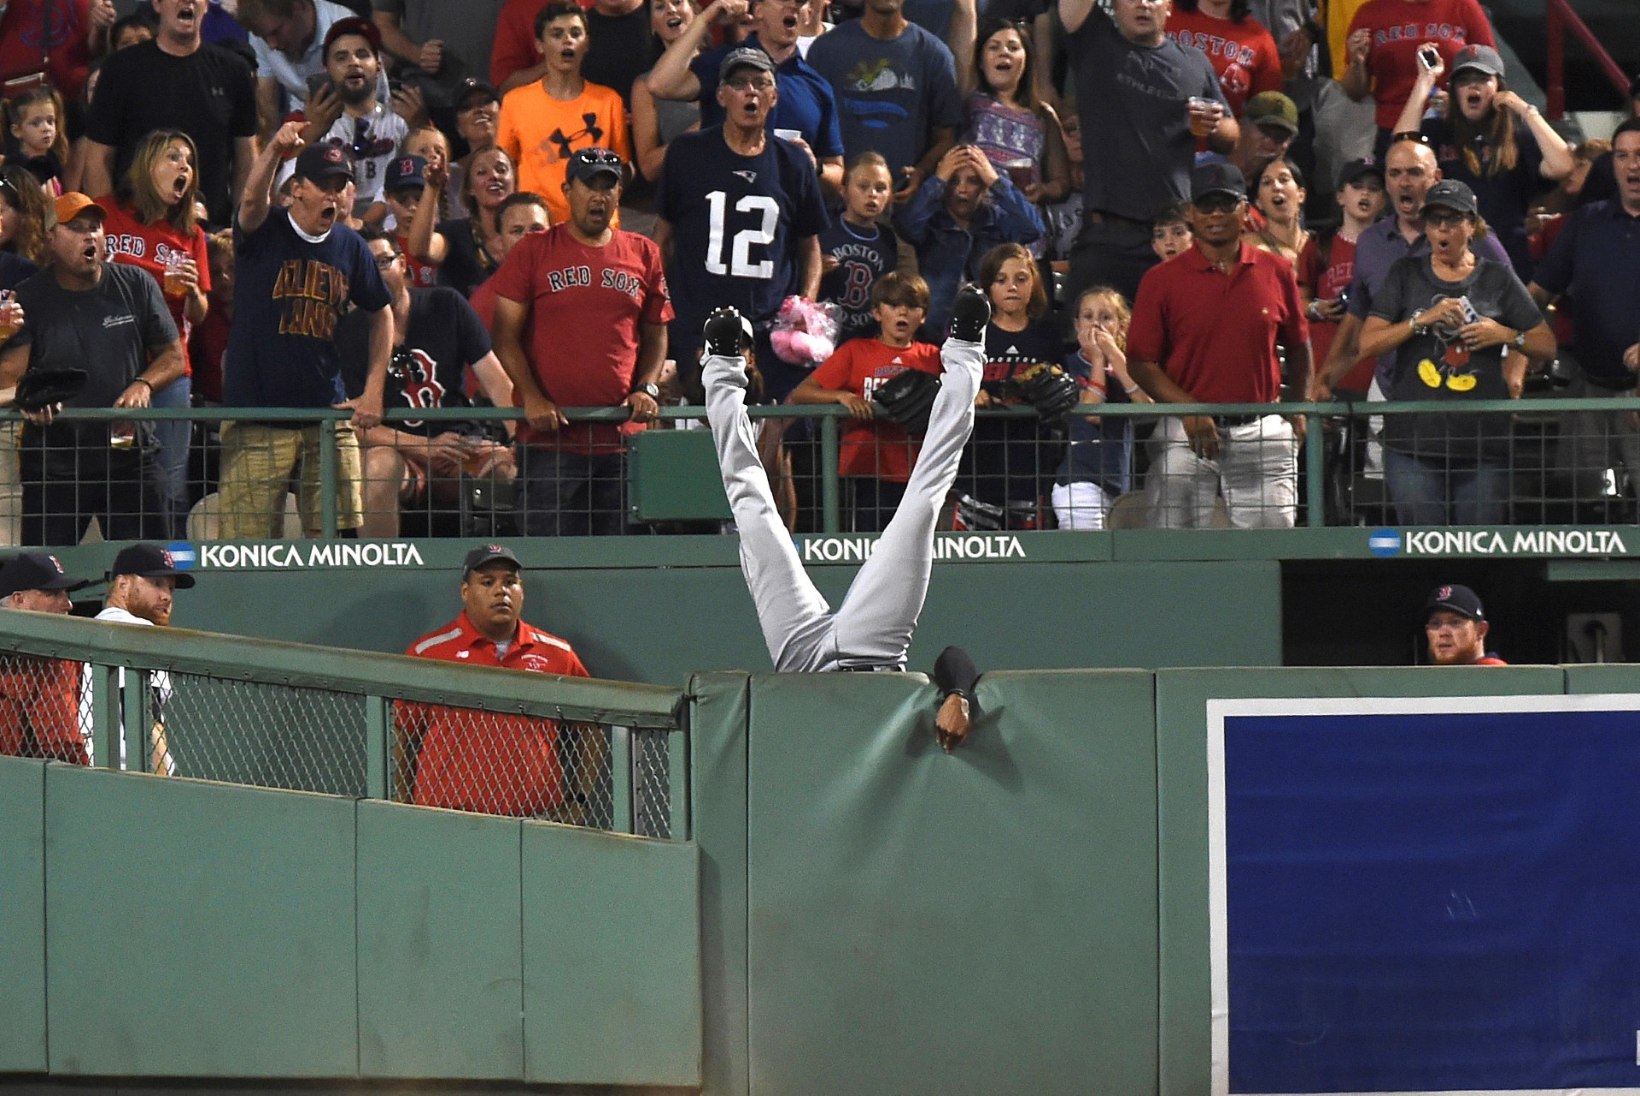 FOTOD JA VIDEO | Ameeriklased hulluvad: see oli pesapalliliiga MLB aasta püüdmine!